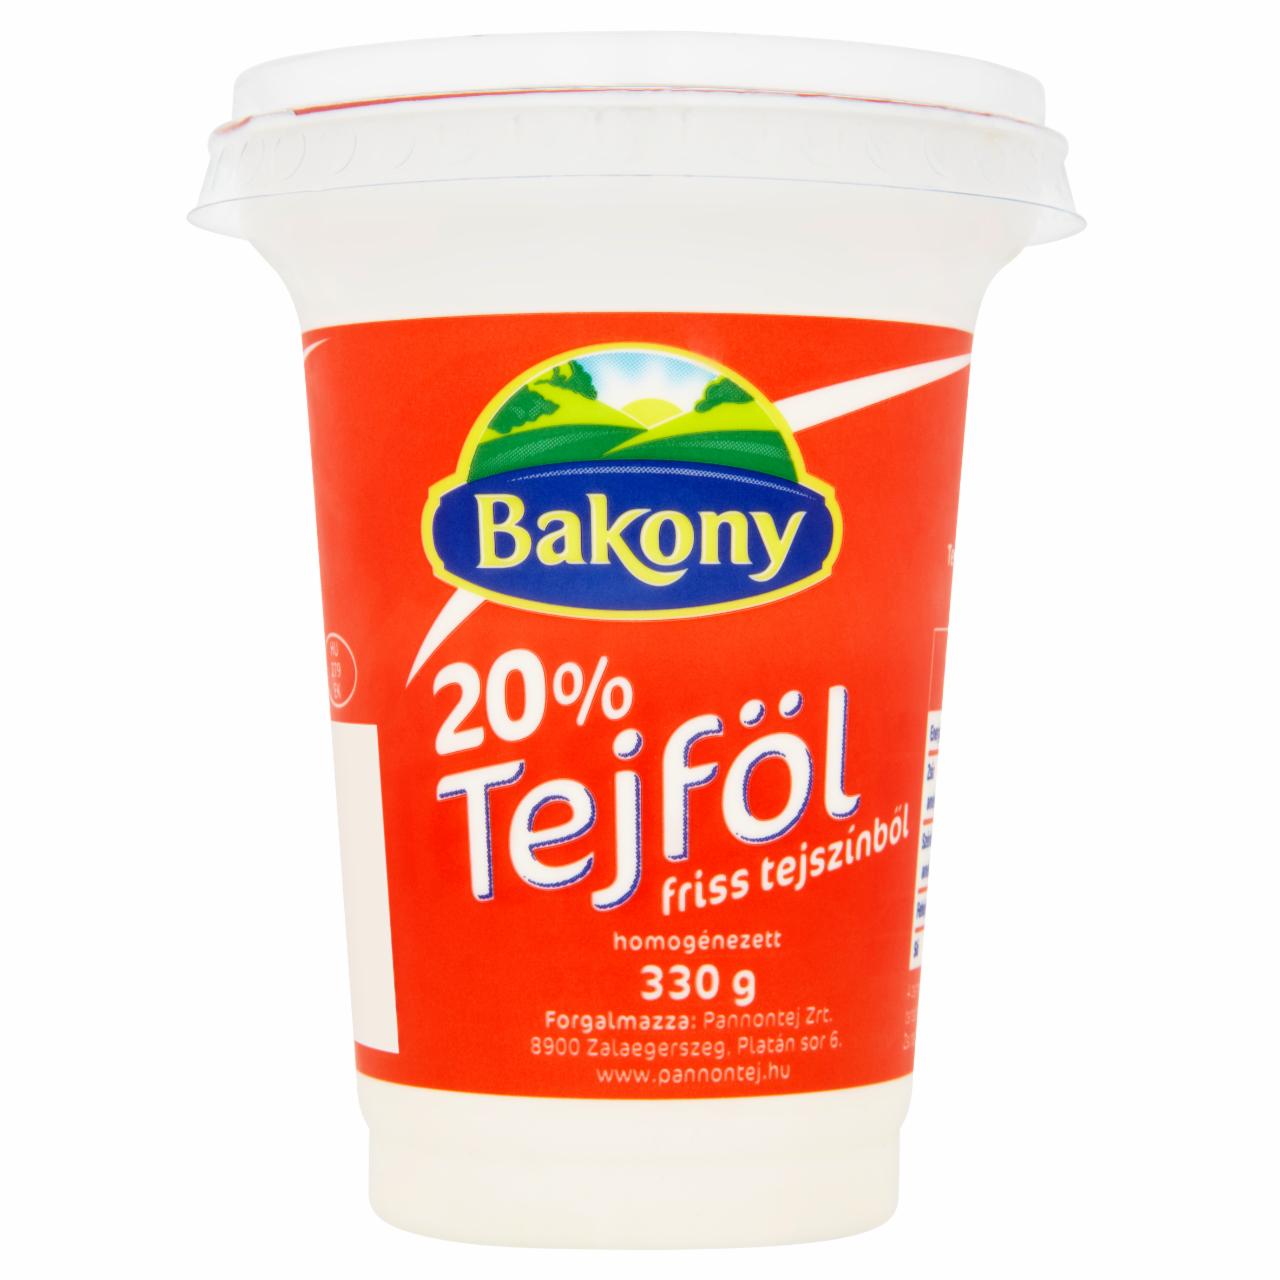 Képek - Bakony 20%-os tejföl 330 g